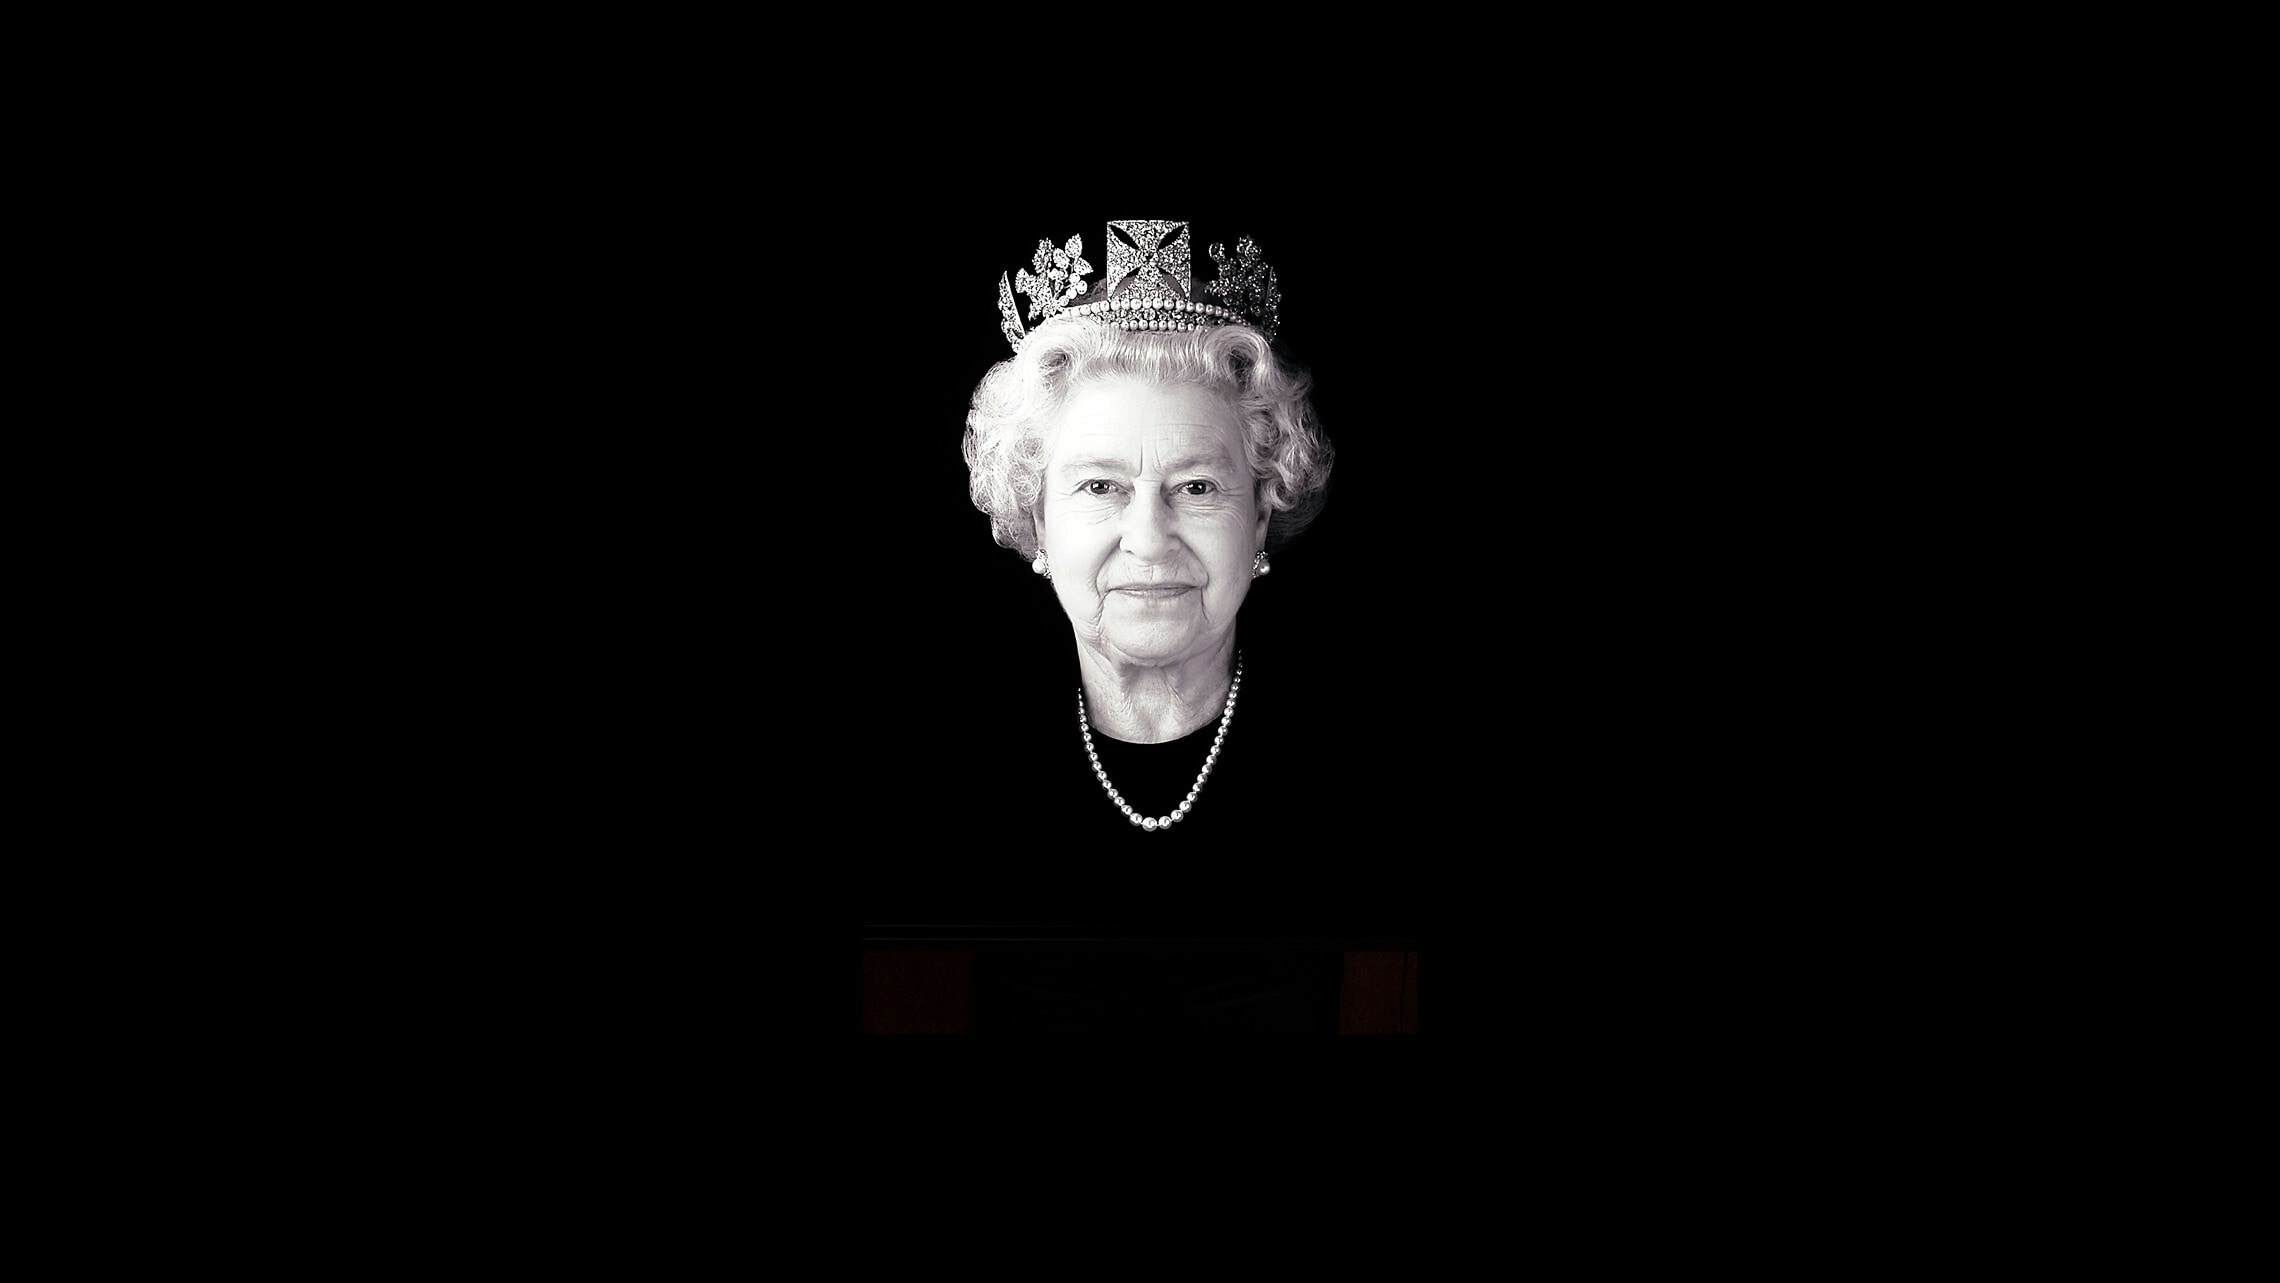 דיוקן של המלכה אליזבת השנייה מ-2004 (צילום: Rob Munday via AP)